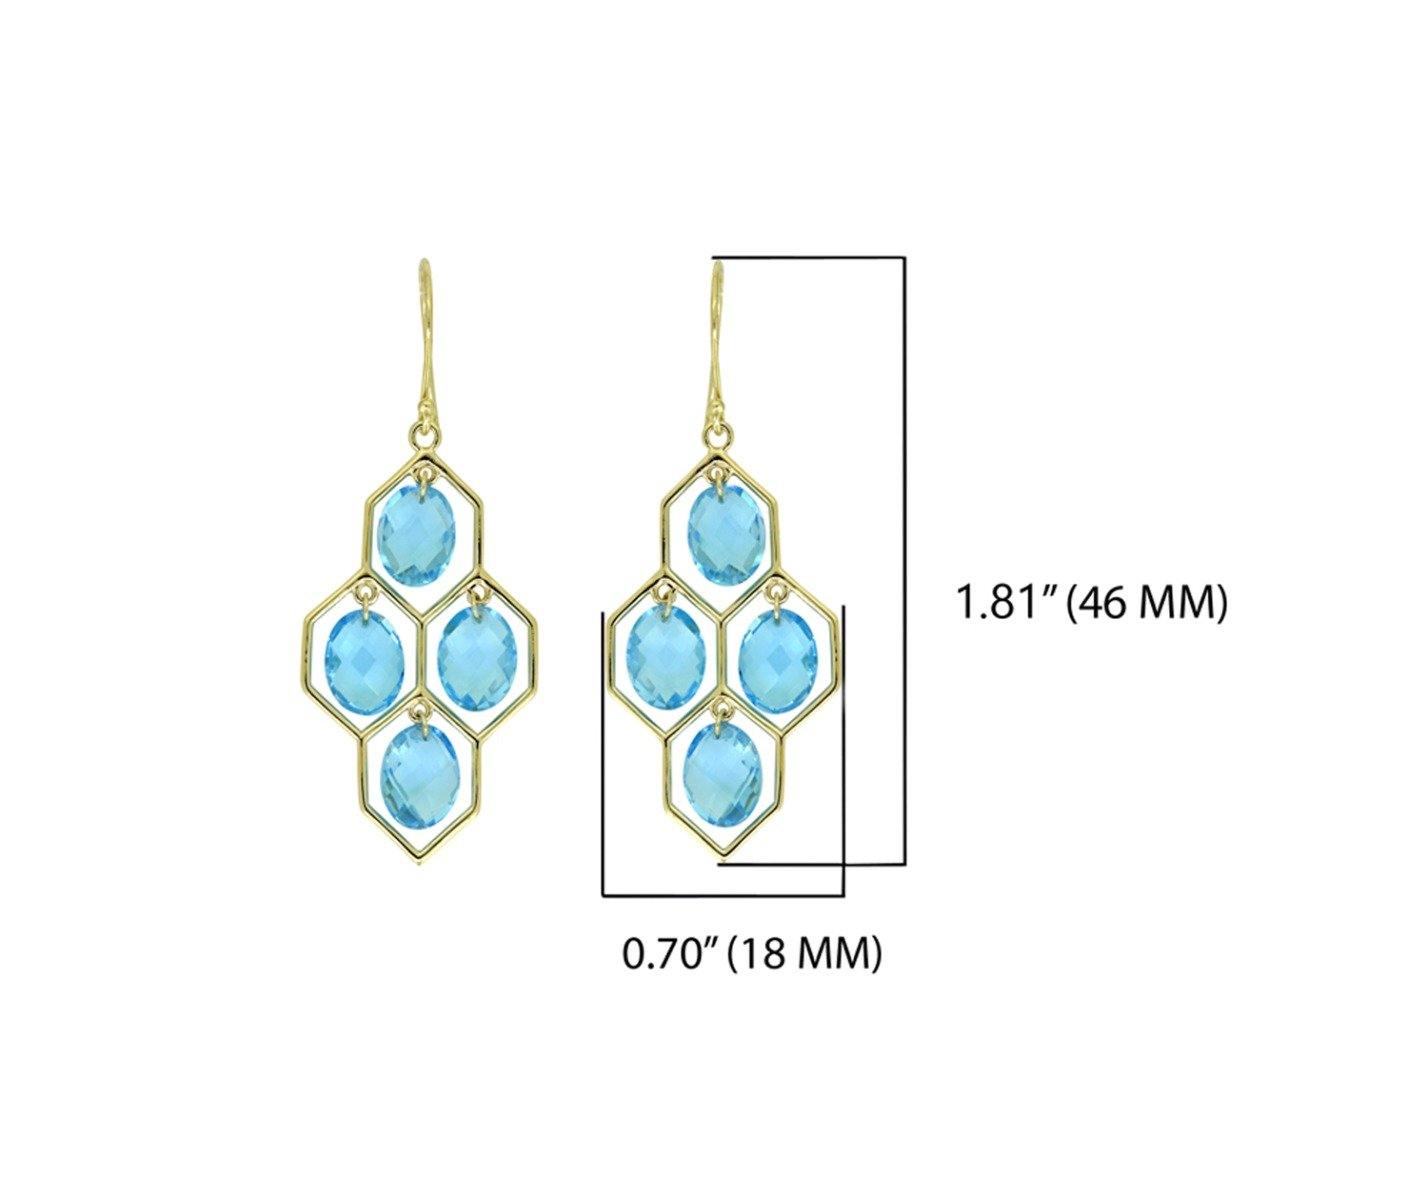 13.00 Ct. Swiss Blue Topaz Solid 14k Yellow Gold Chandelier Earrings Jewelry - YoTreasure